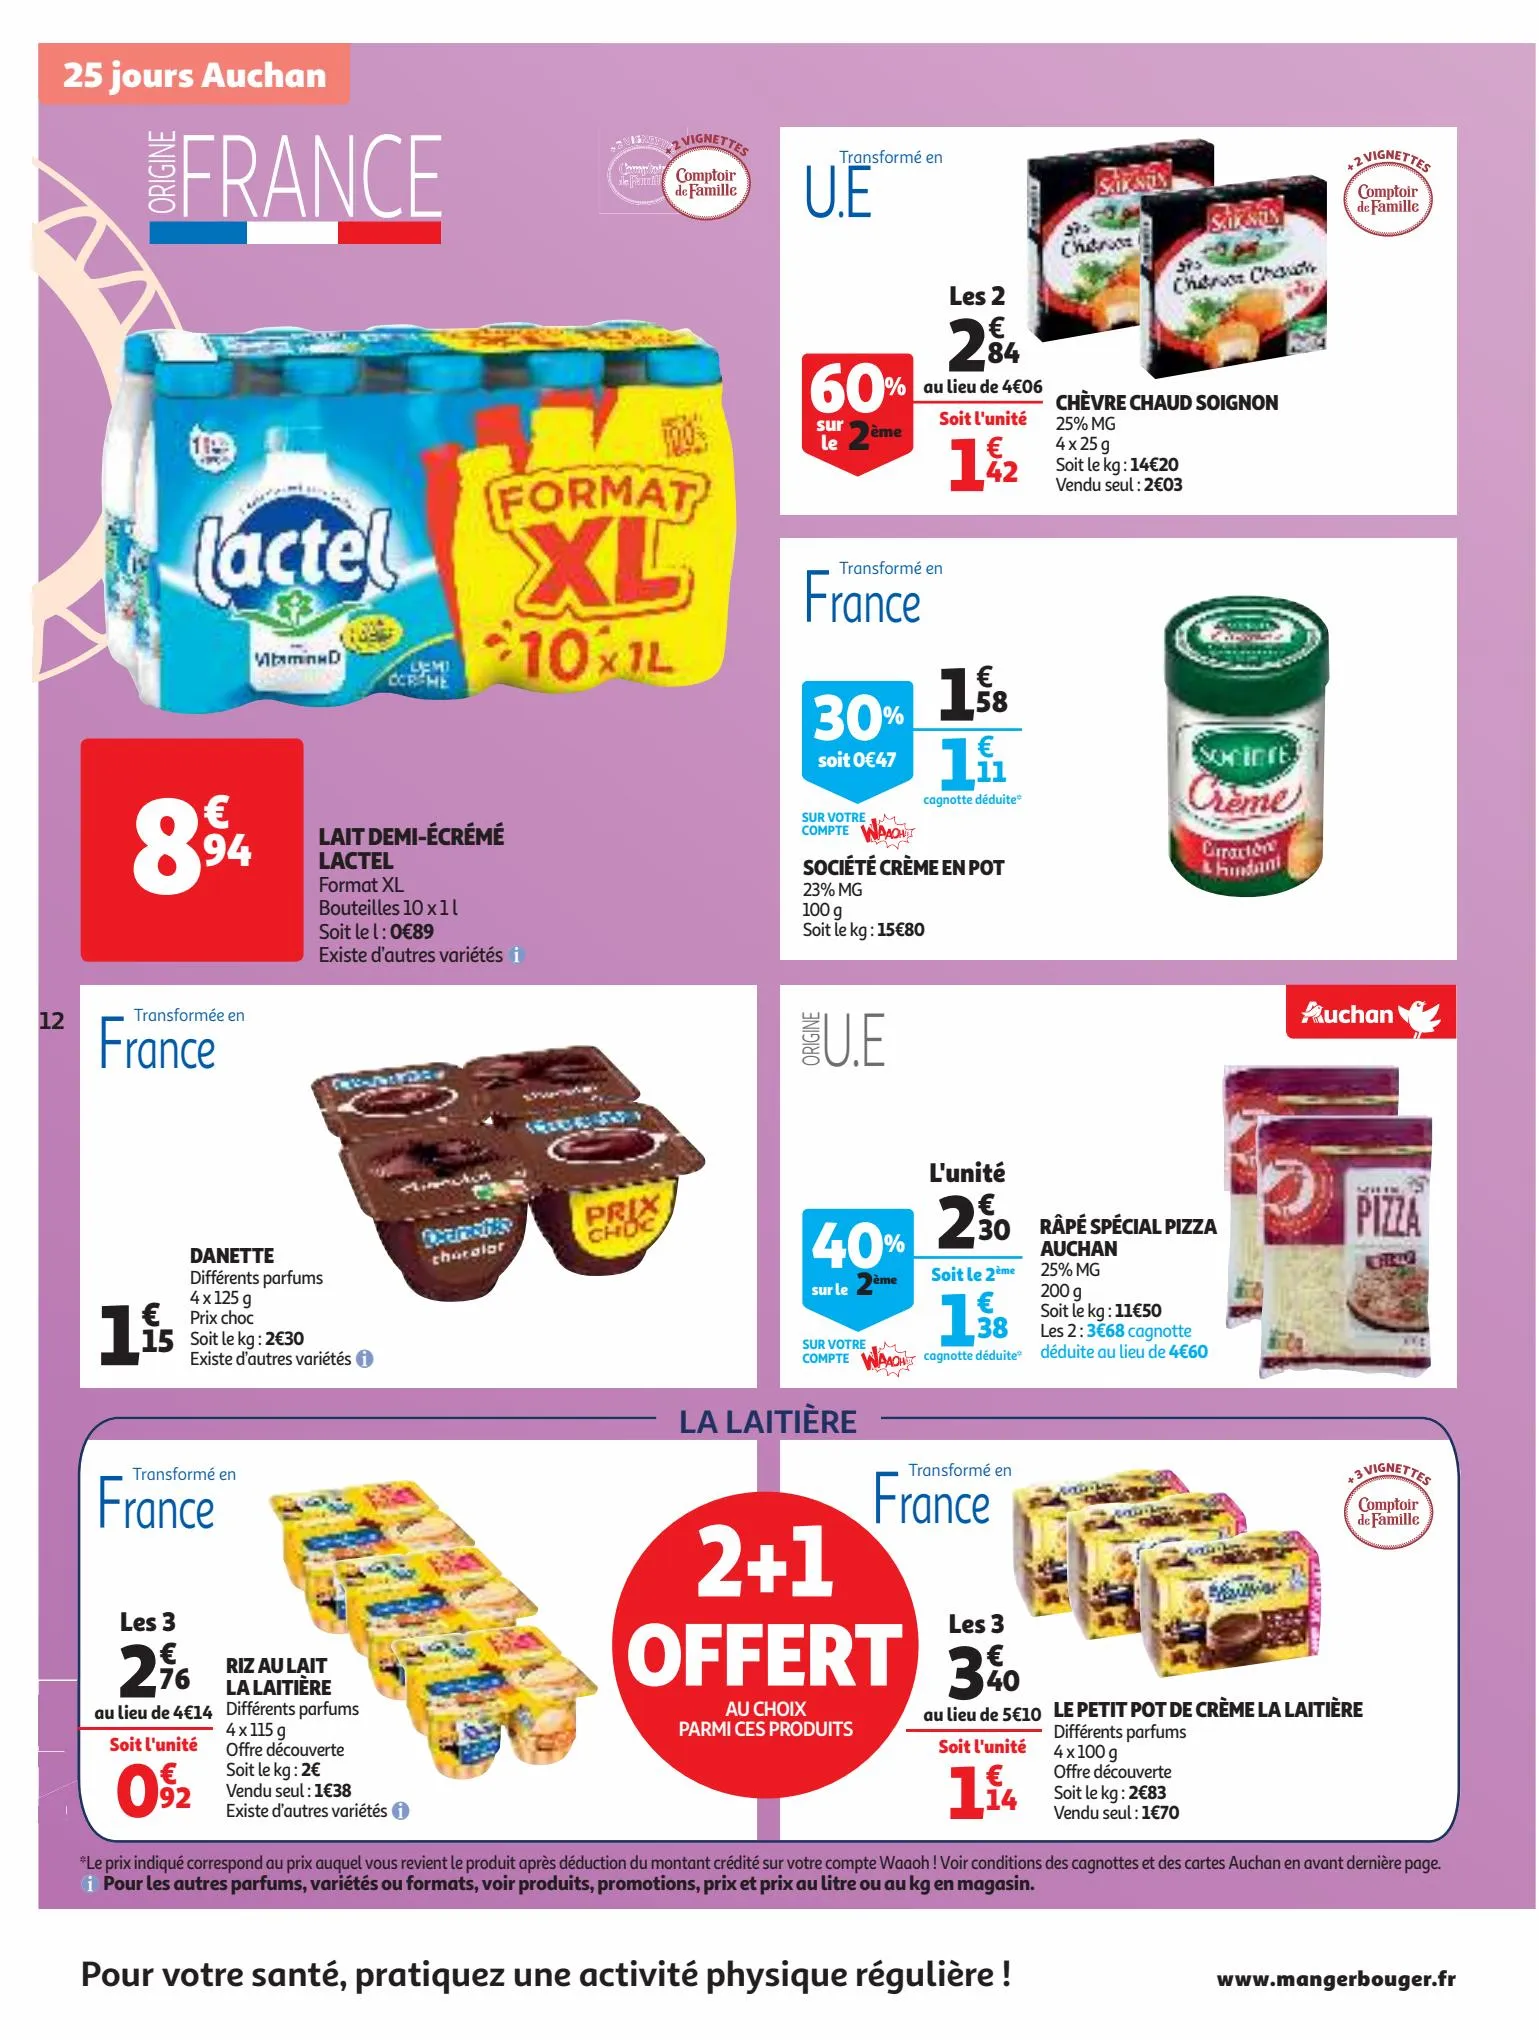 Catalogue 25 Jours Auchan, page 00012